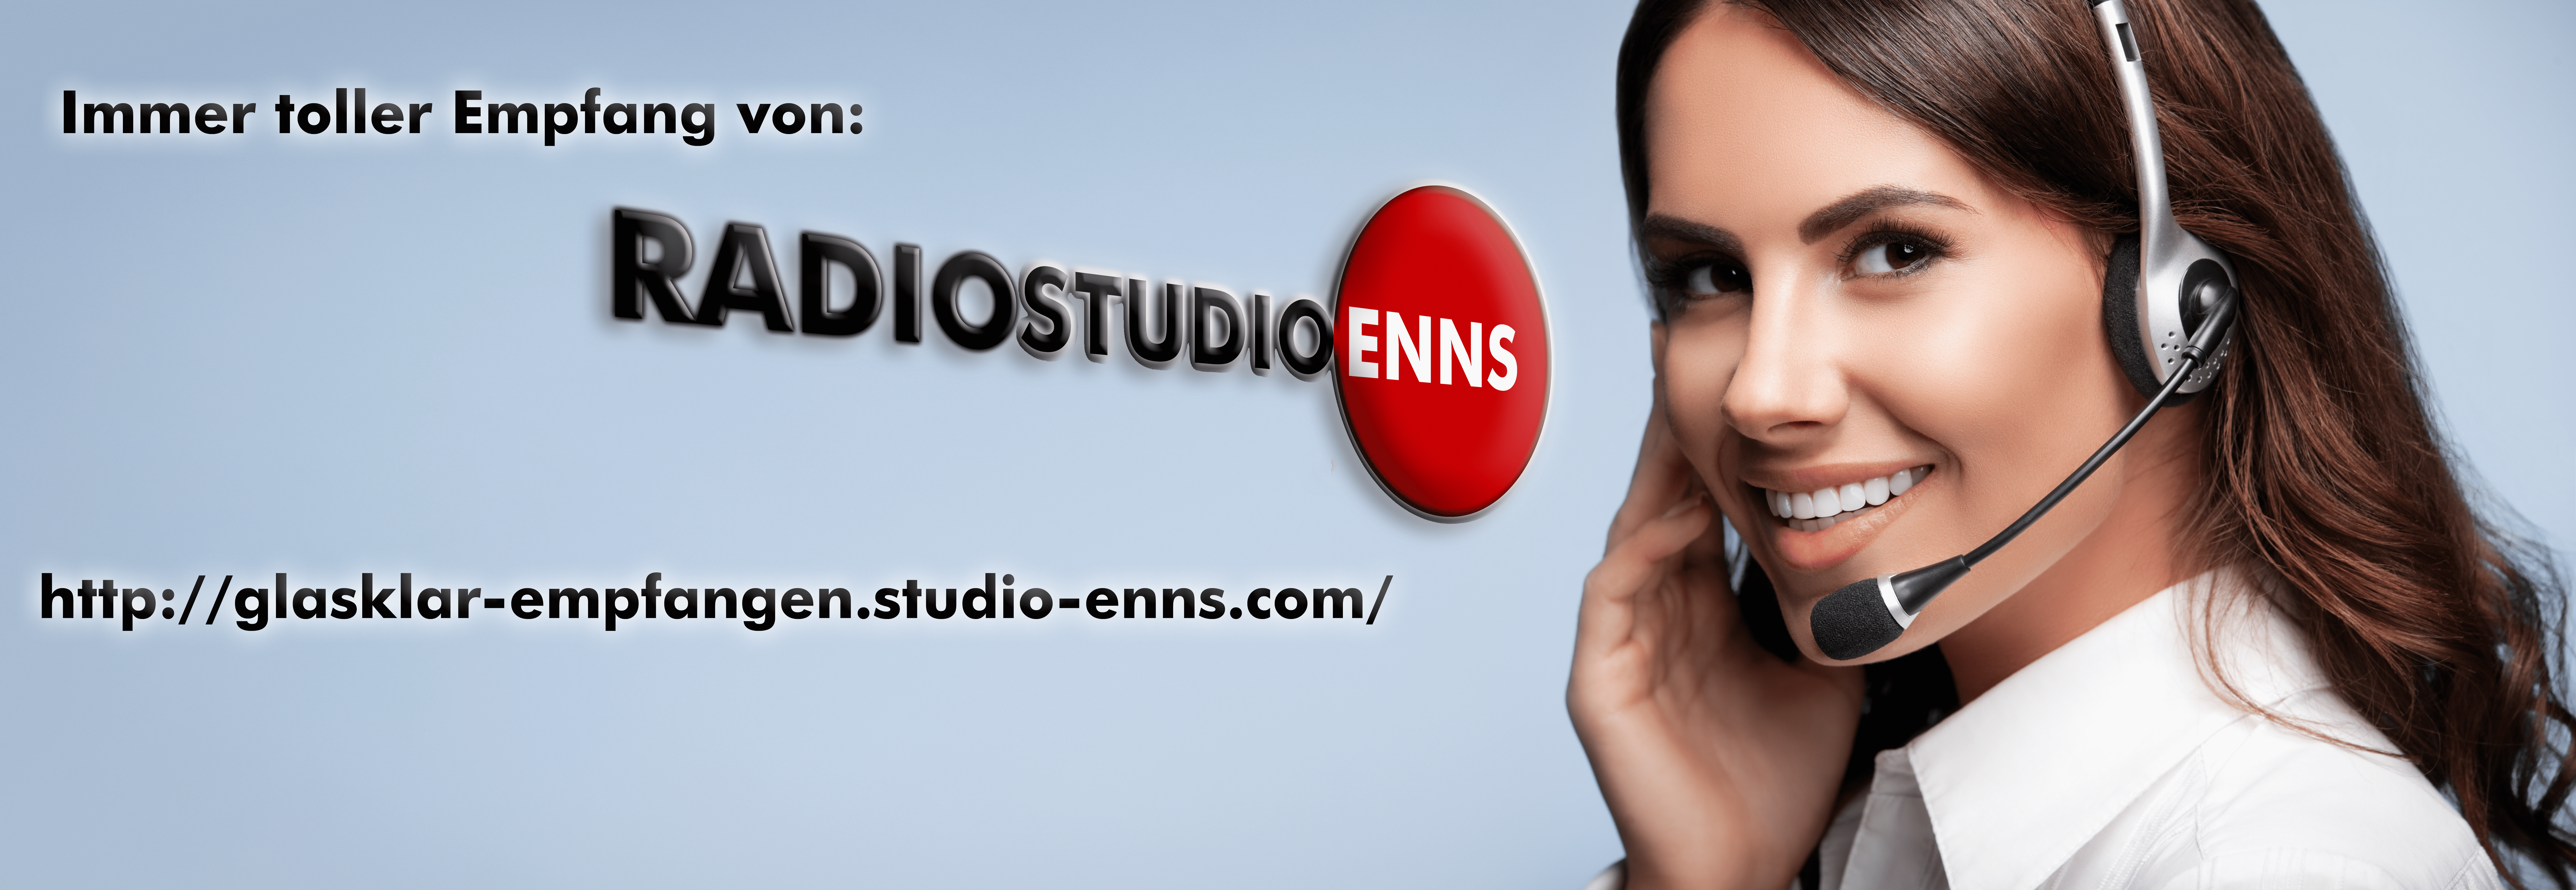 Studio Enns - Tolle Webseite - In allen Sprachen Radioempfang